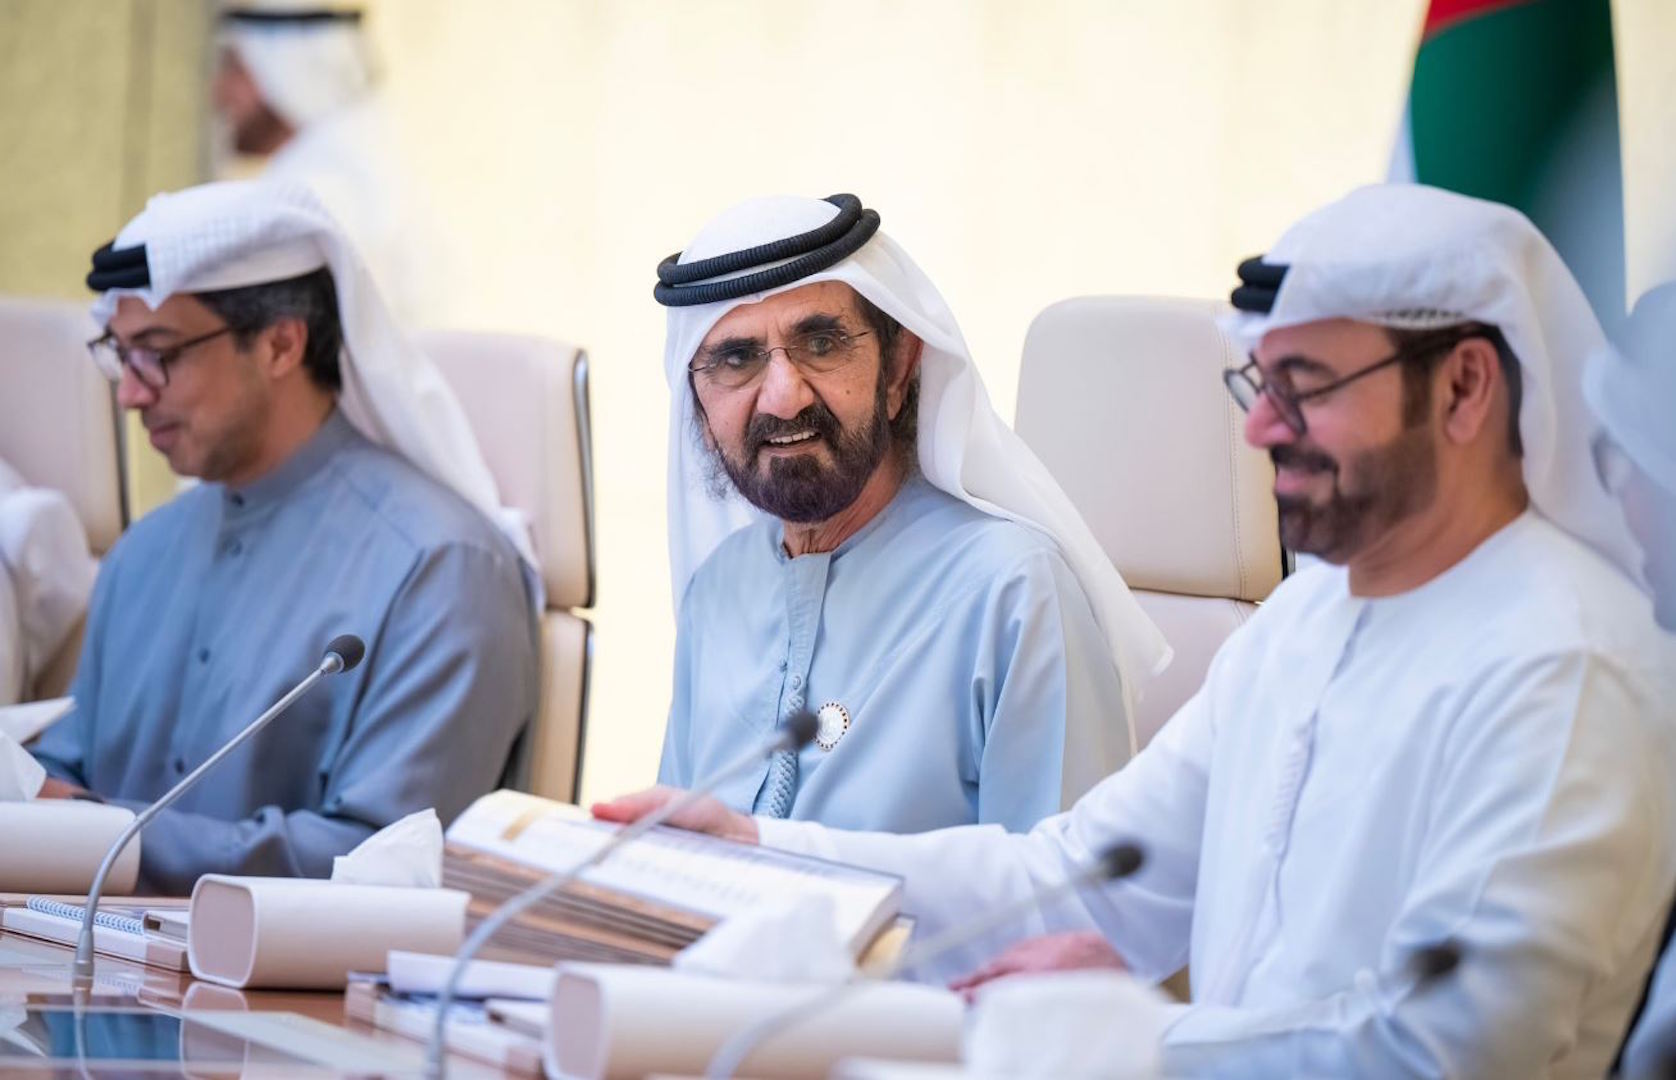 مجلس الوزراء يقر تمديد مدة جواز السفر الإماراتي لـ 10 سنوات